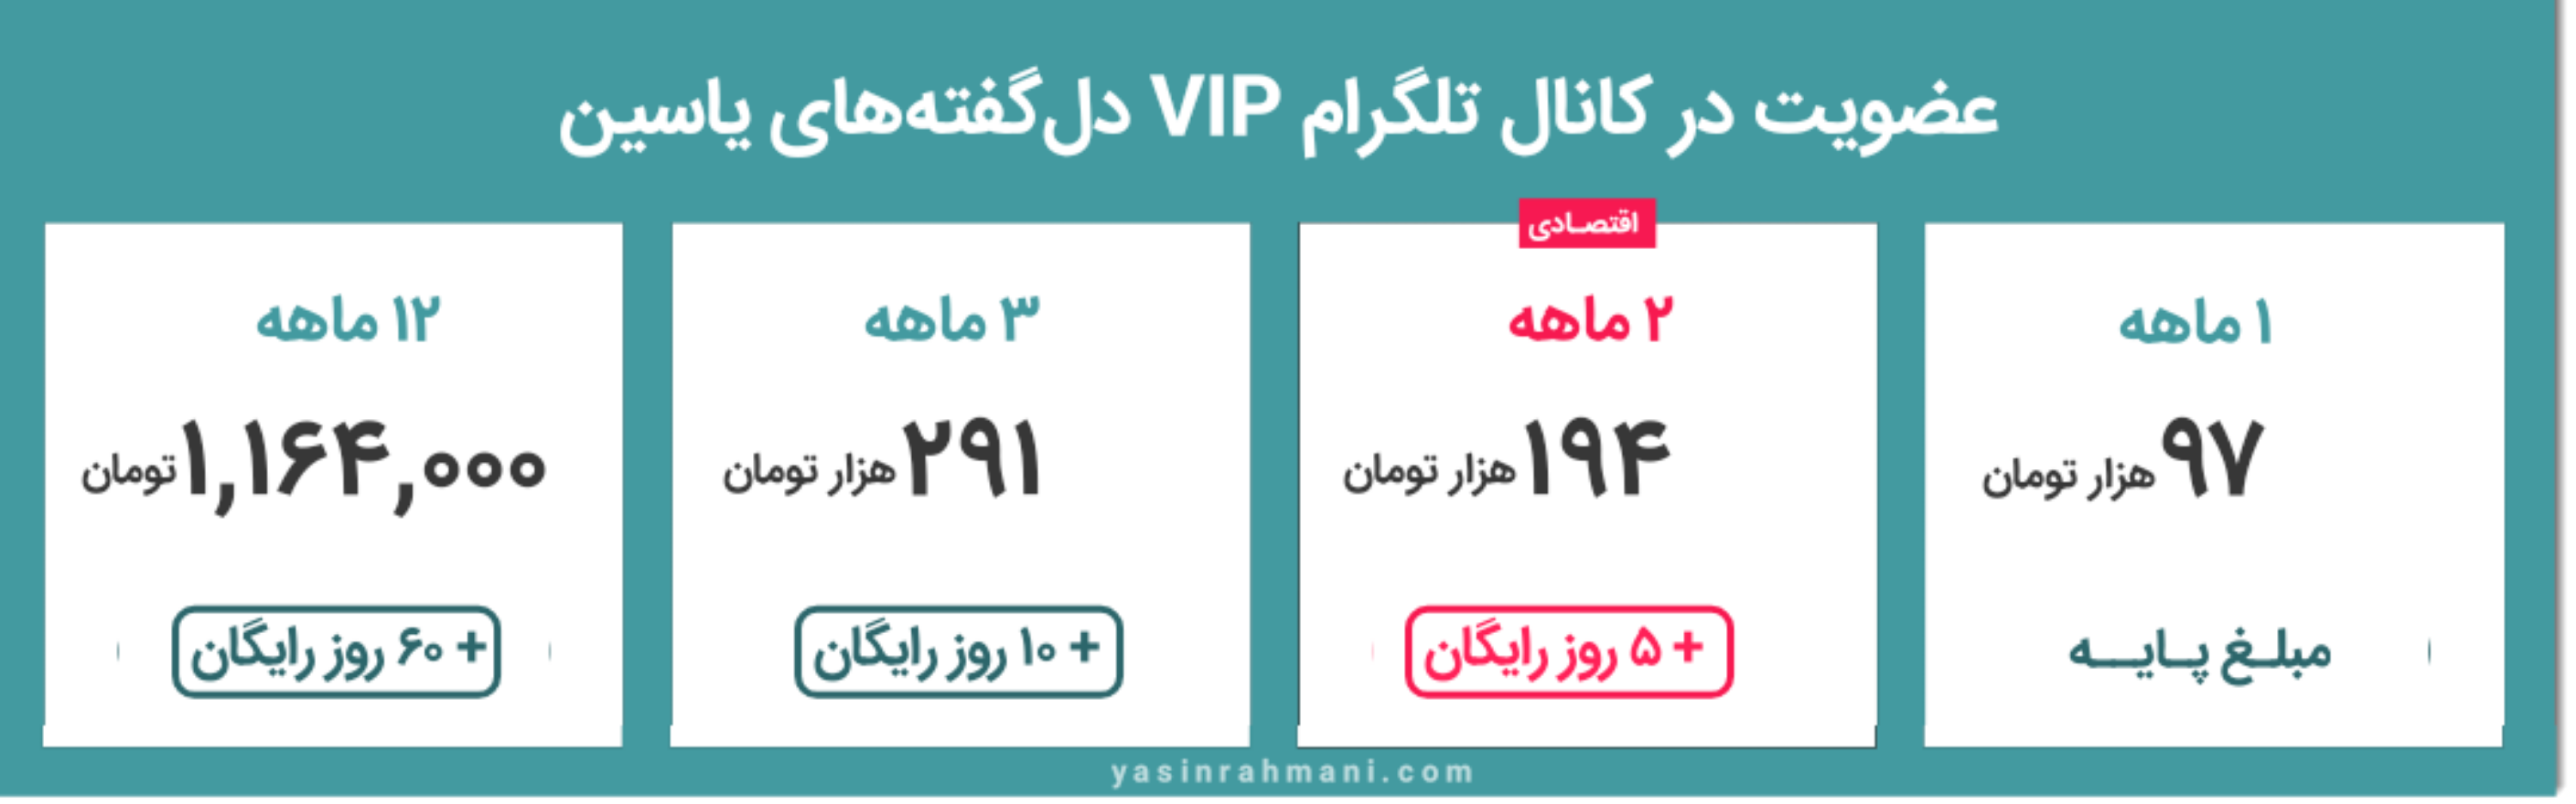 کانال تلگرام VIP دلگفته های یاسین - پاکسازی یاسین رحمانی